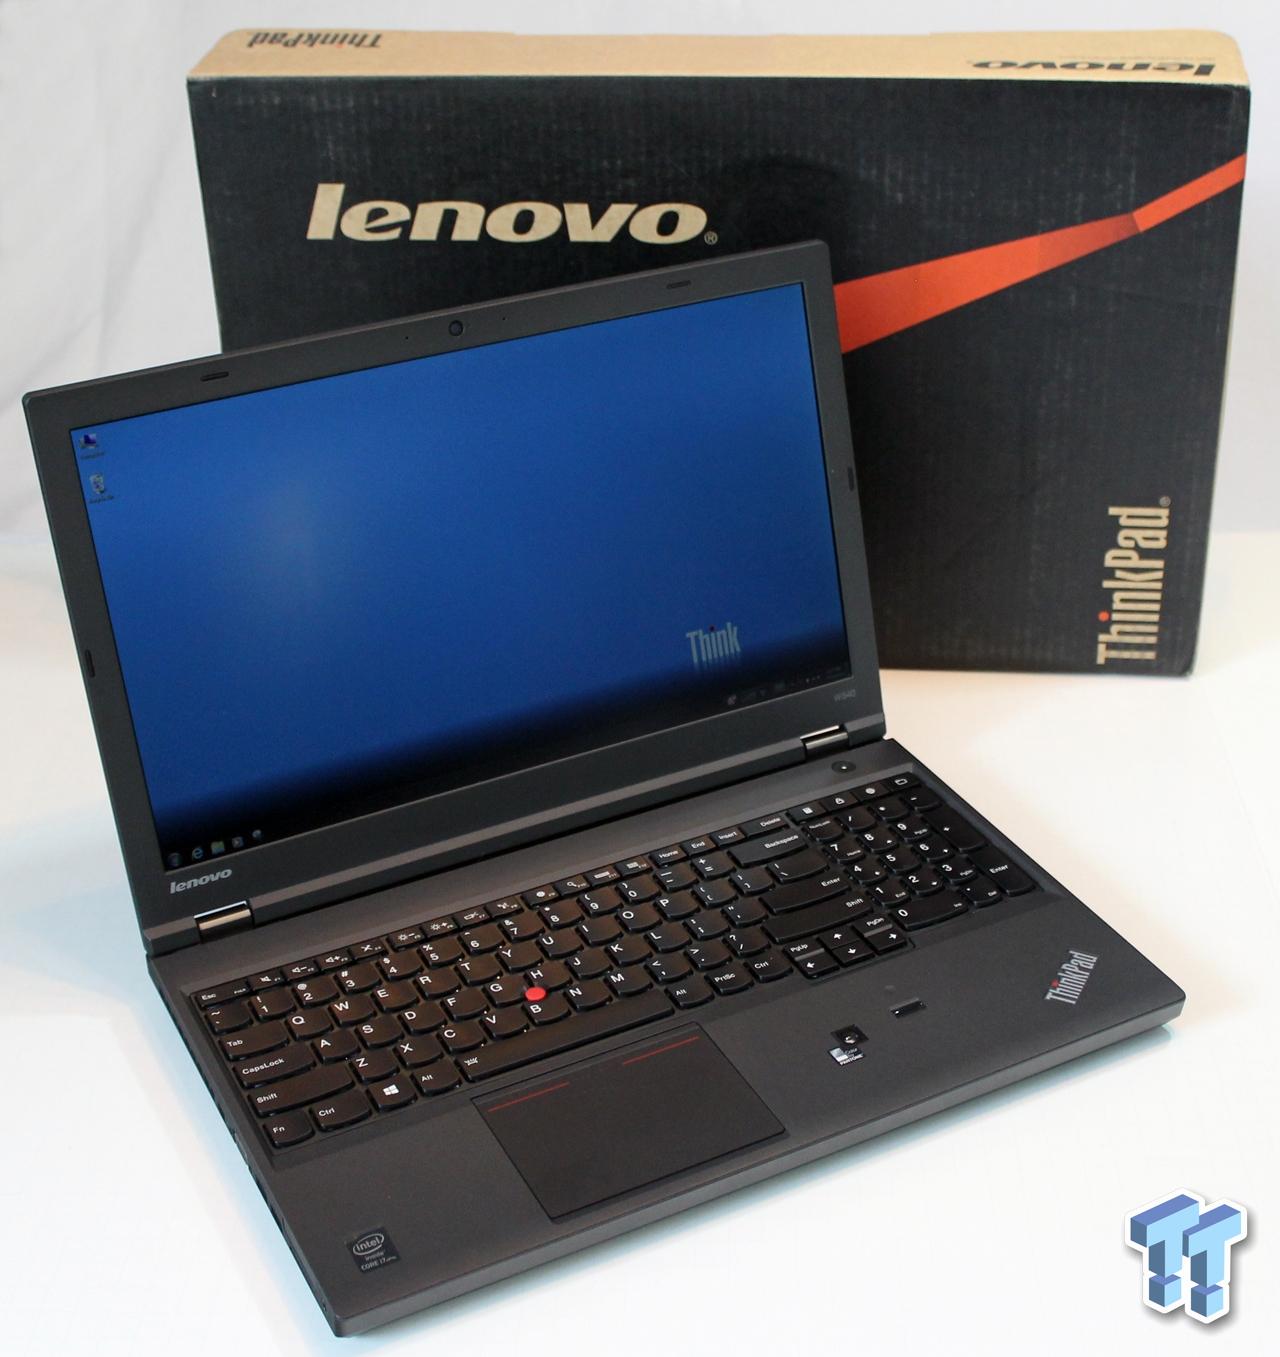 Lenovo ThinkPad W540 Mobile Workstation Laptop Review | TweakTown